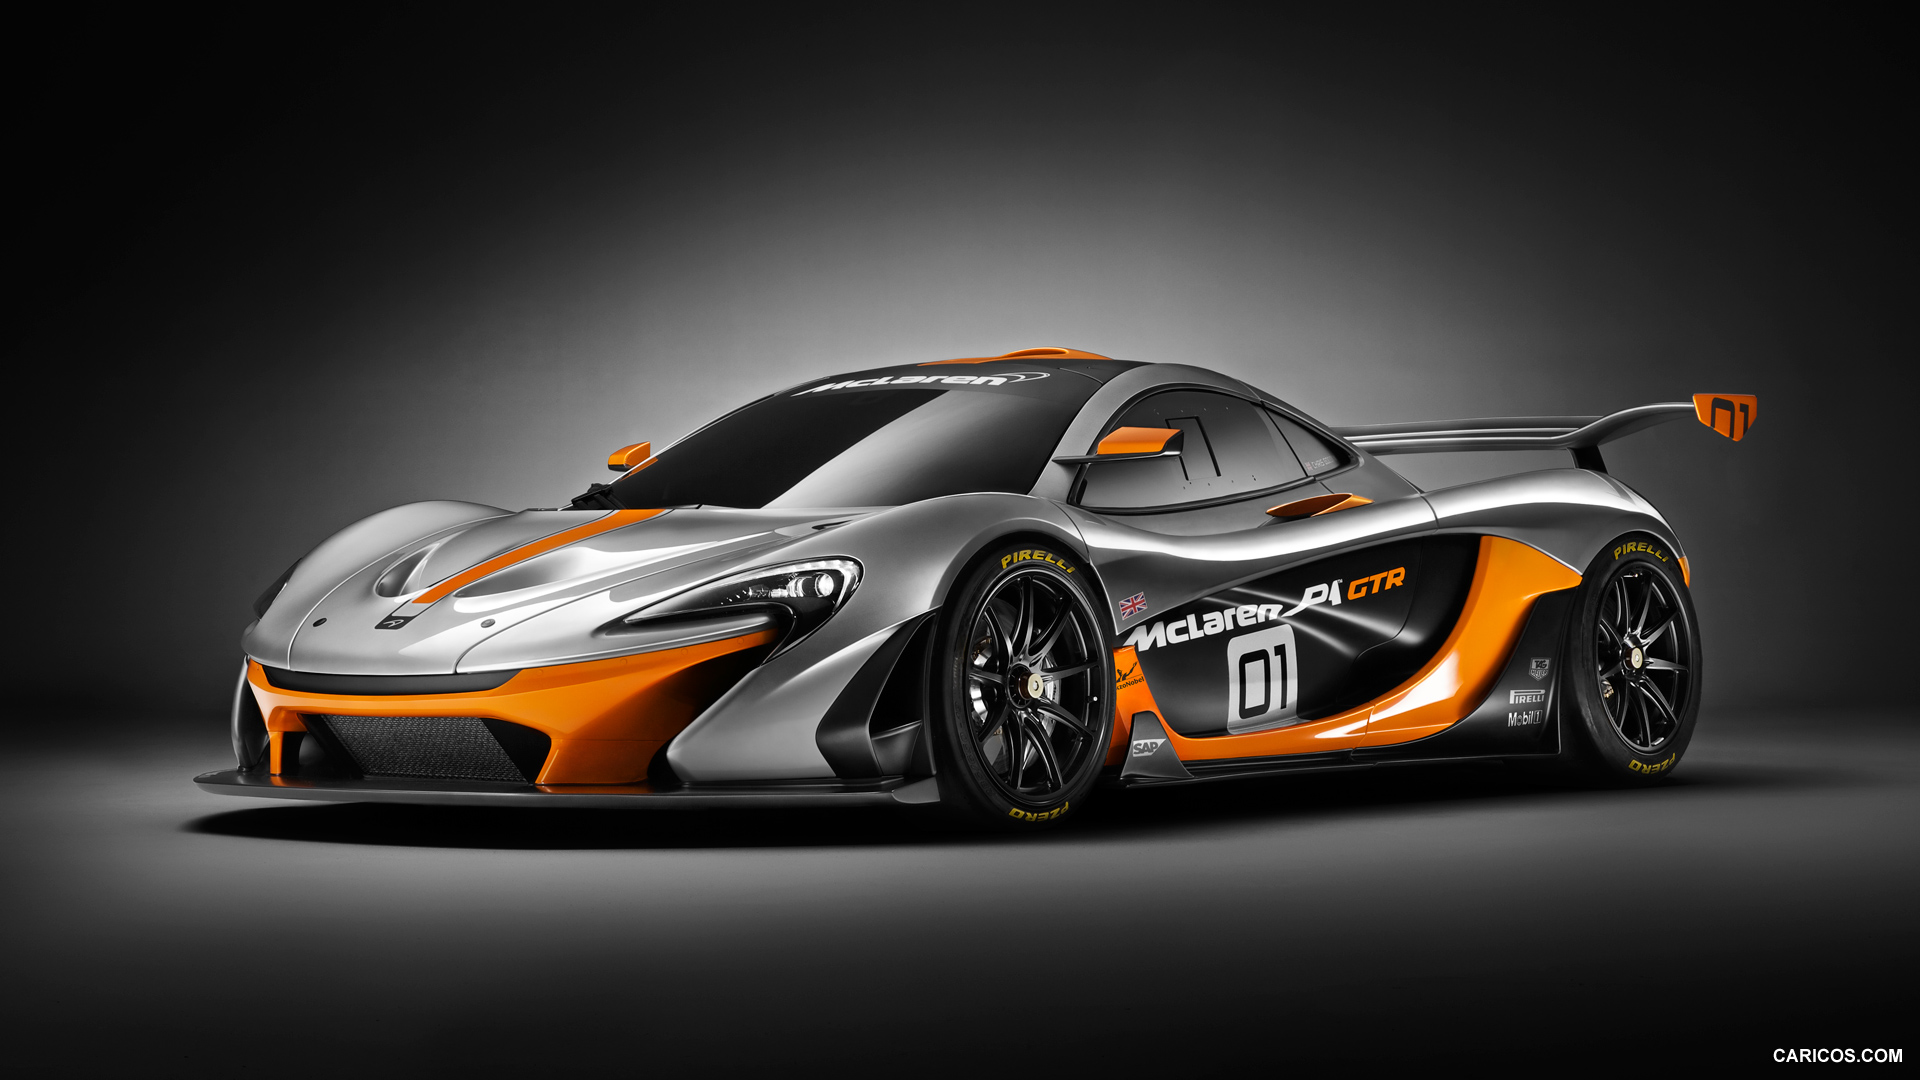 2014 McLaren P1 GTR Concept  - Front, #3 of 8